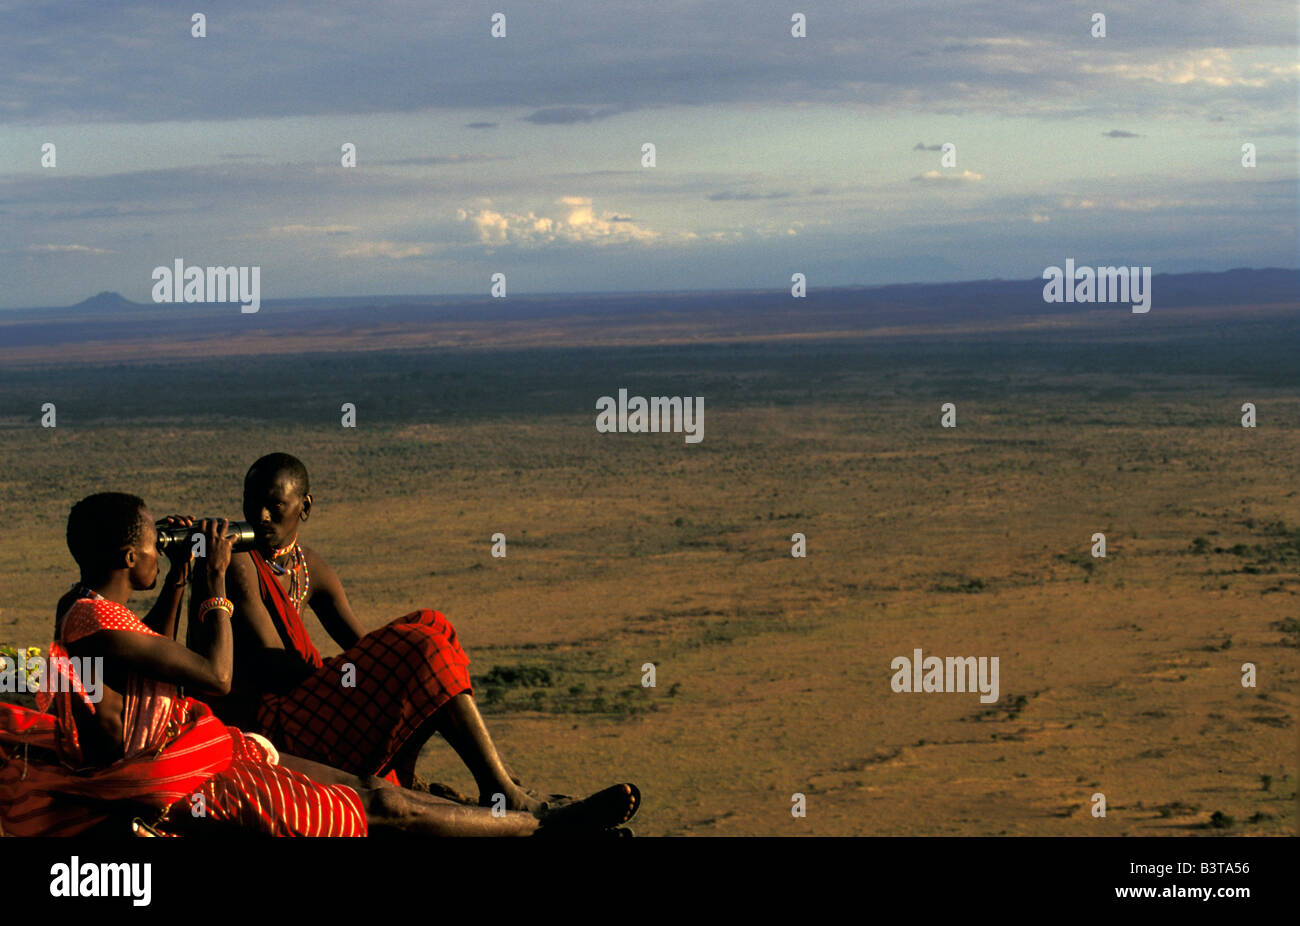 Afrique, Kenya, Masai Mara. A Warrior's vue à partir de la réserve nationale de Shimba Hills. L'année 2007. Banque D'Images